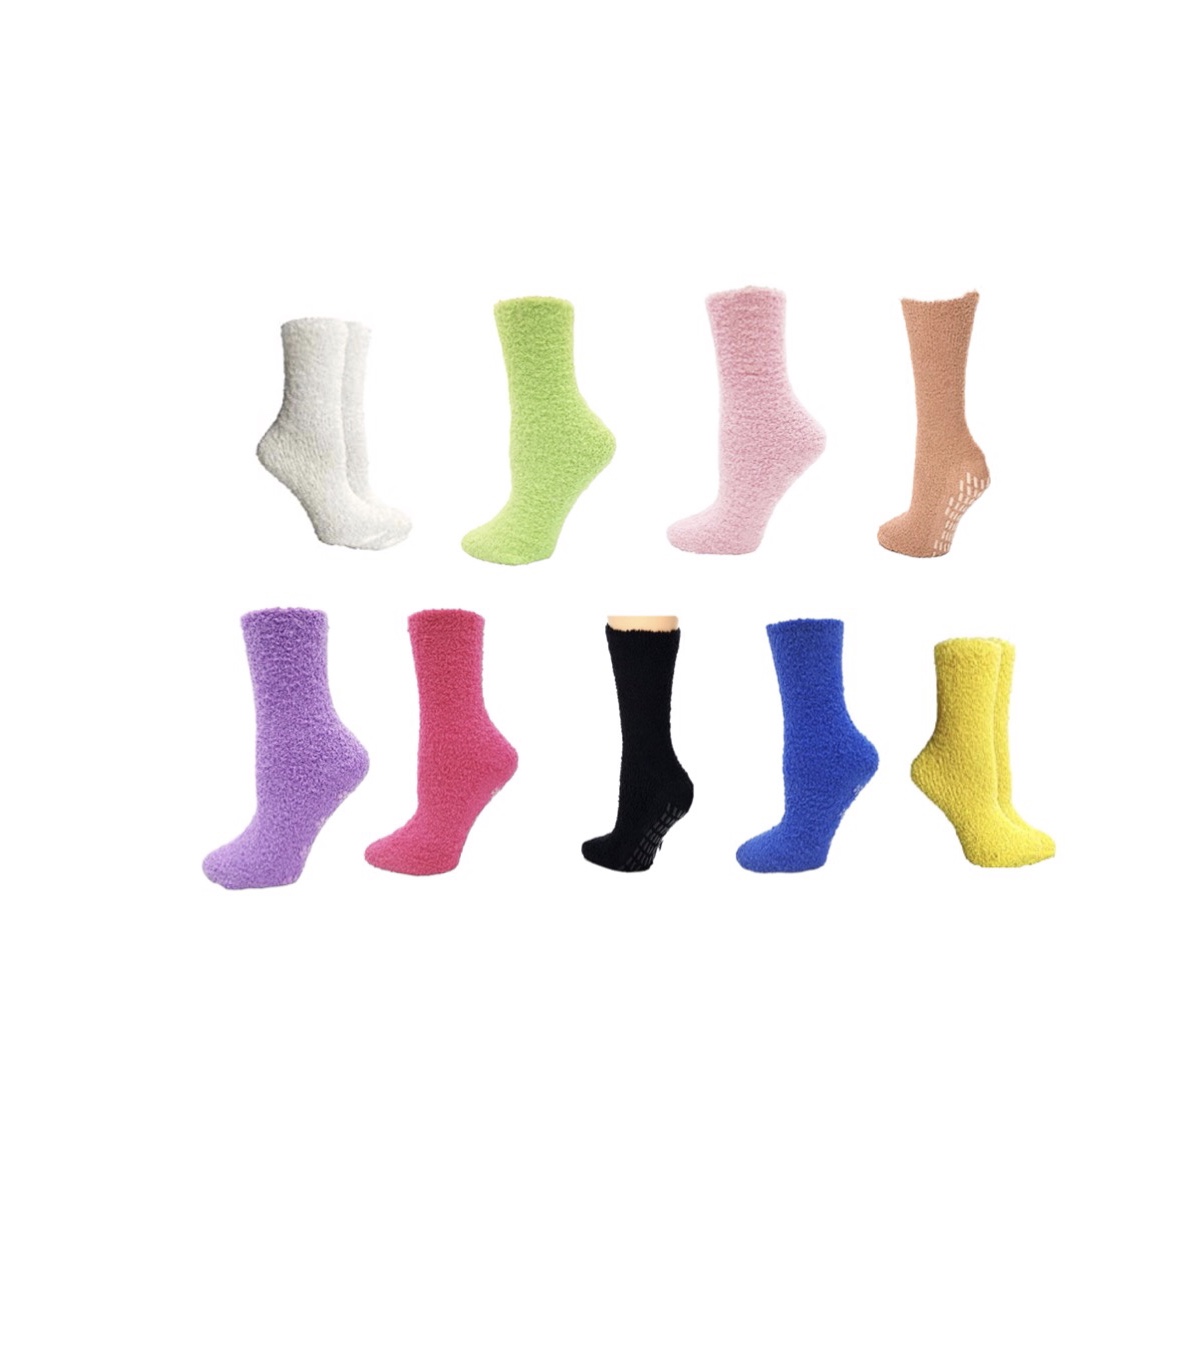 Slipper Socks With bottom Grips Unisex - Nayaz Variety